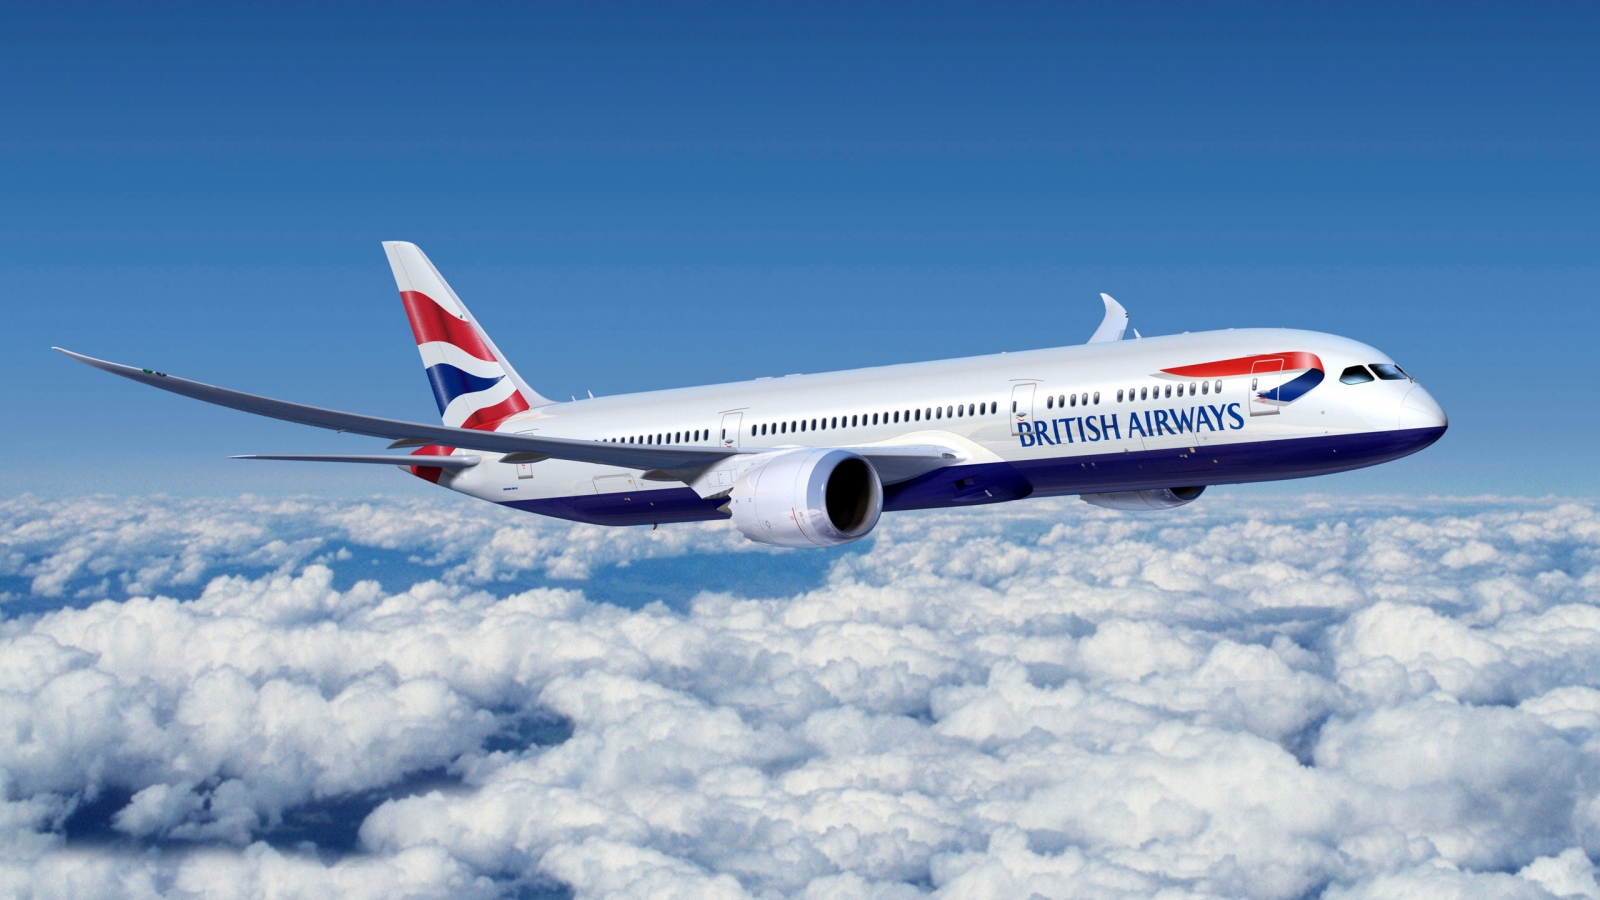 British Airways for 1600 x 900 HDTV resolution